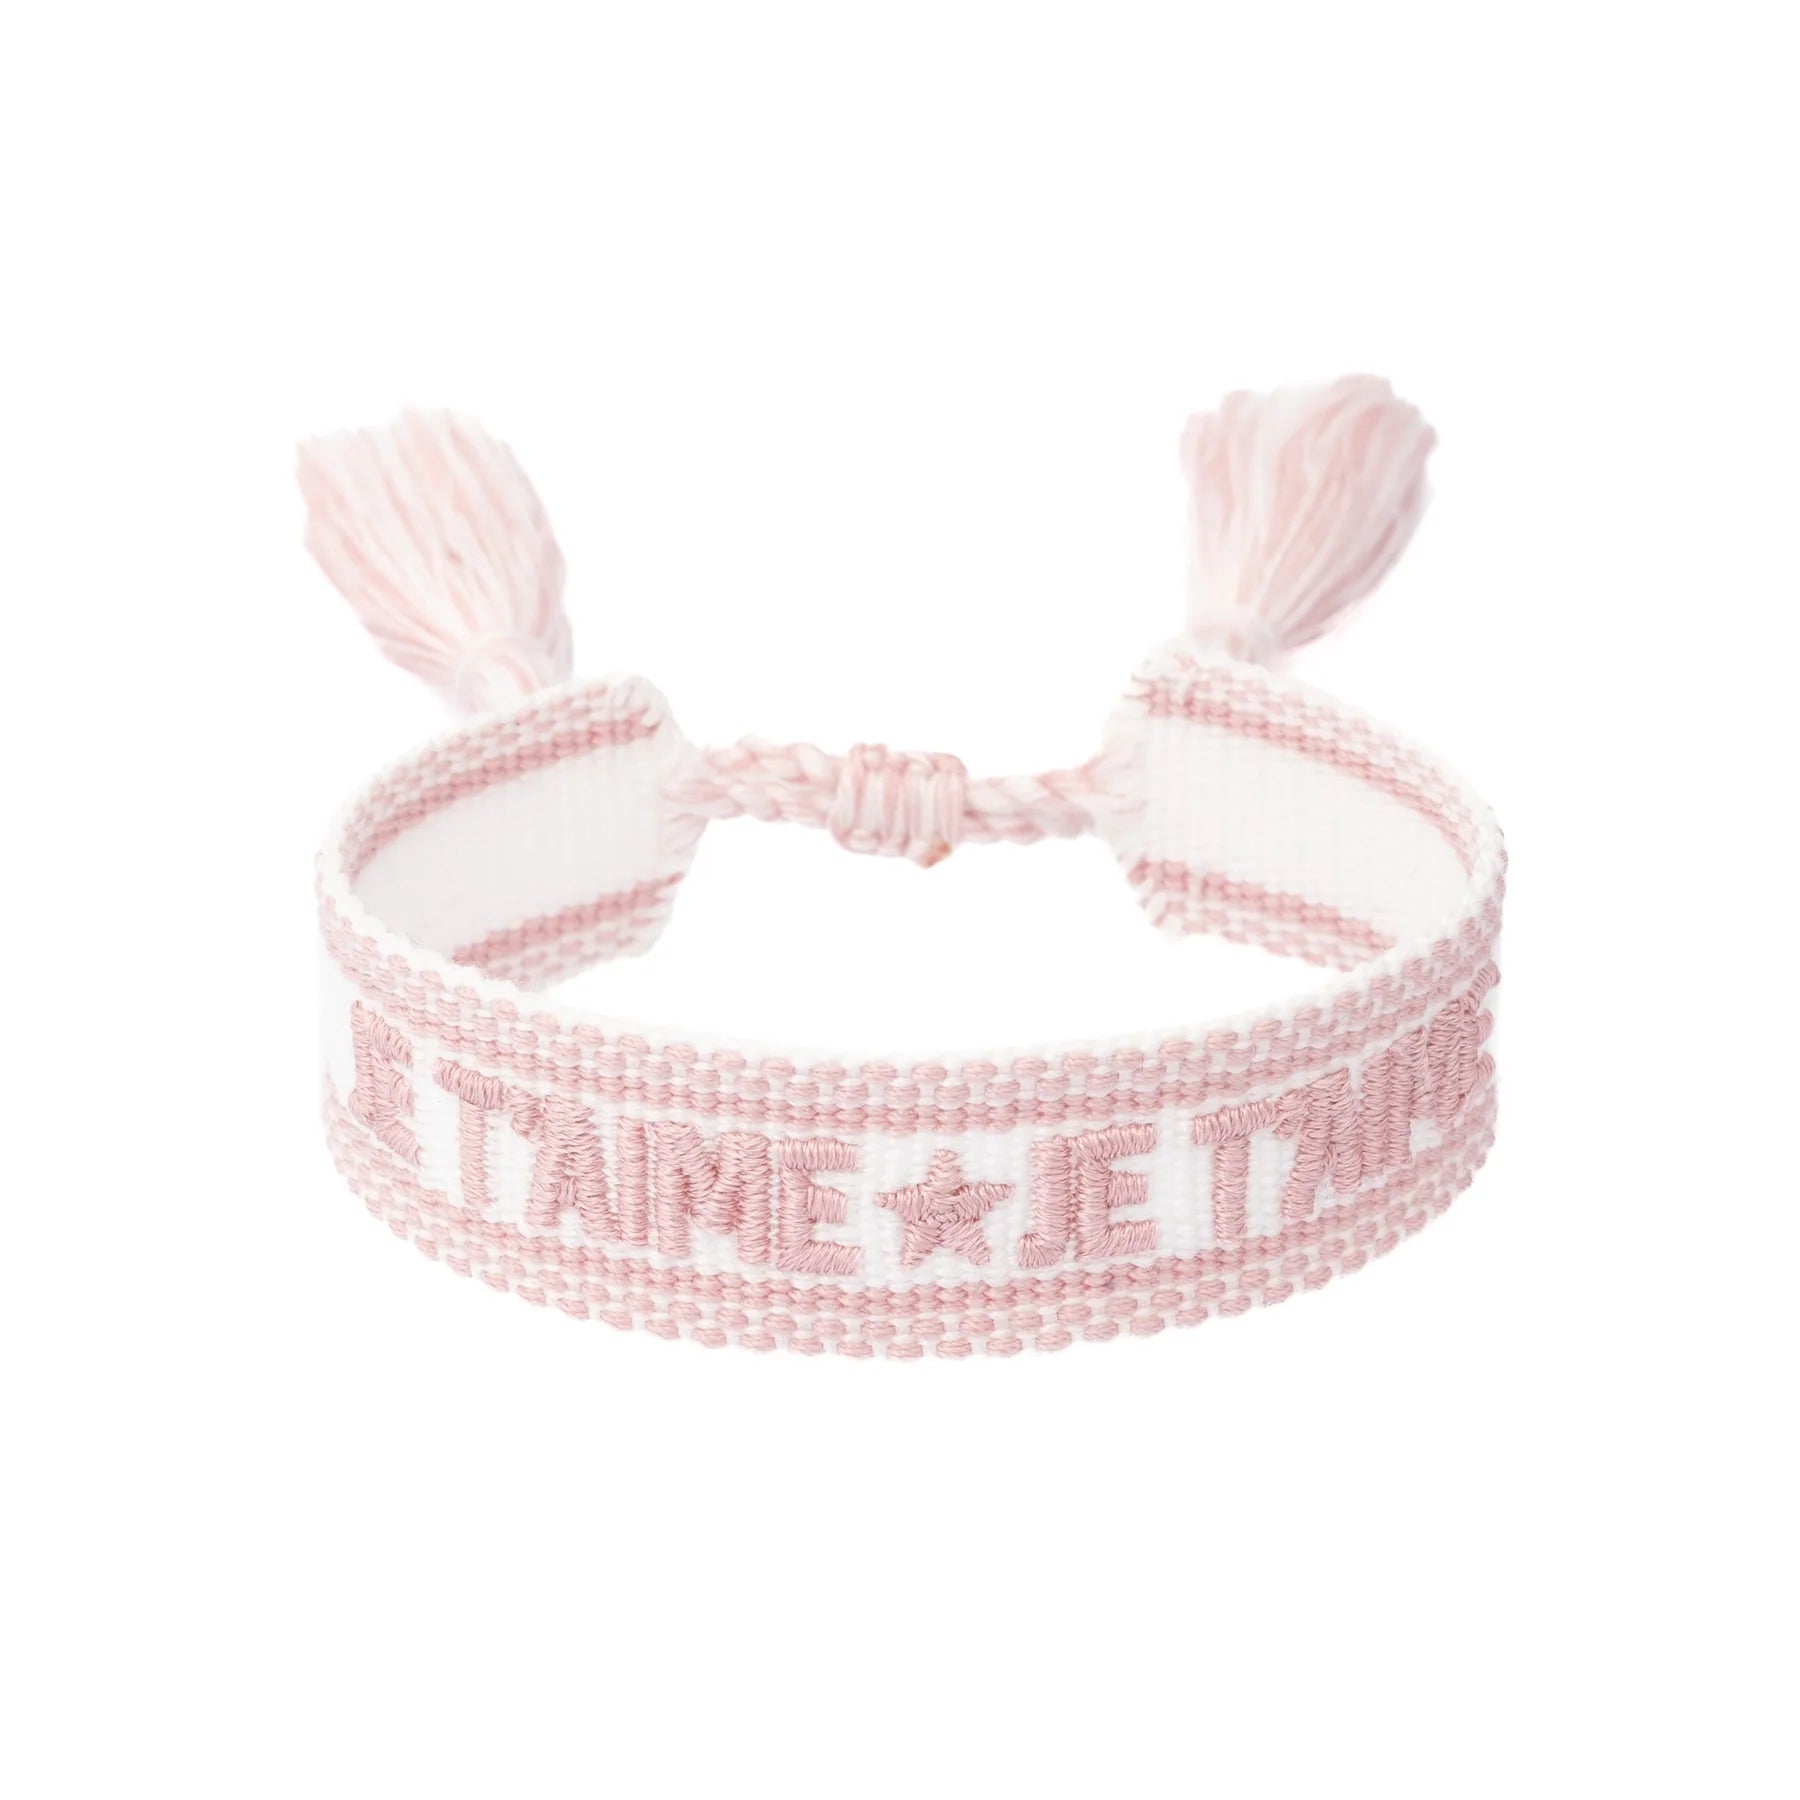 Woven Bracelet "Je T'aime" White w/ Light Rose